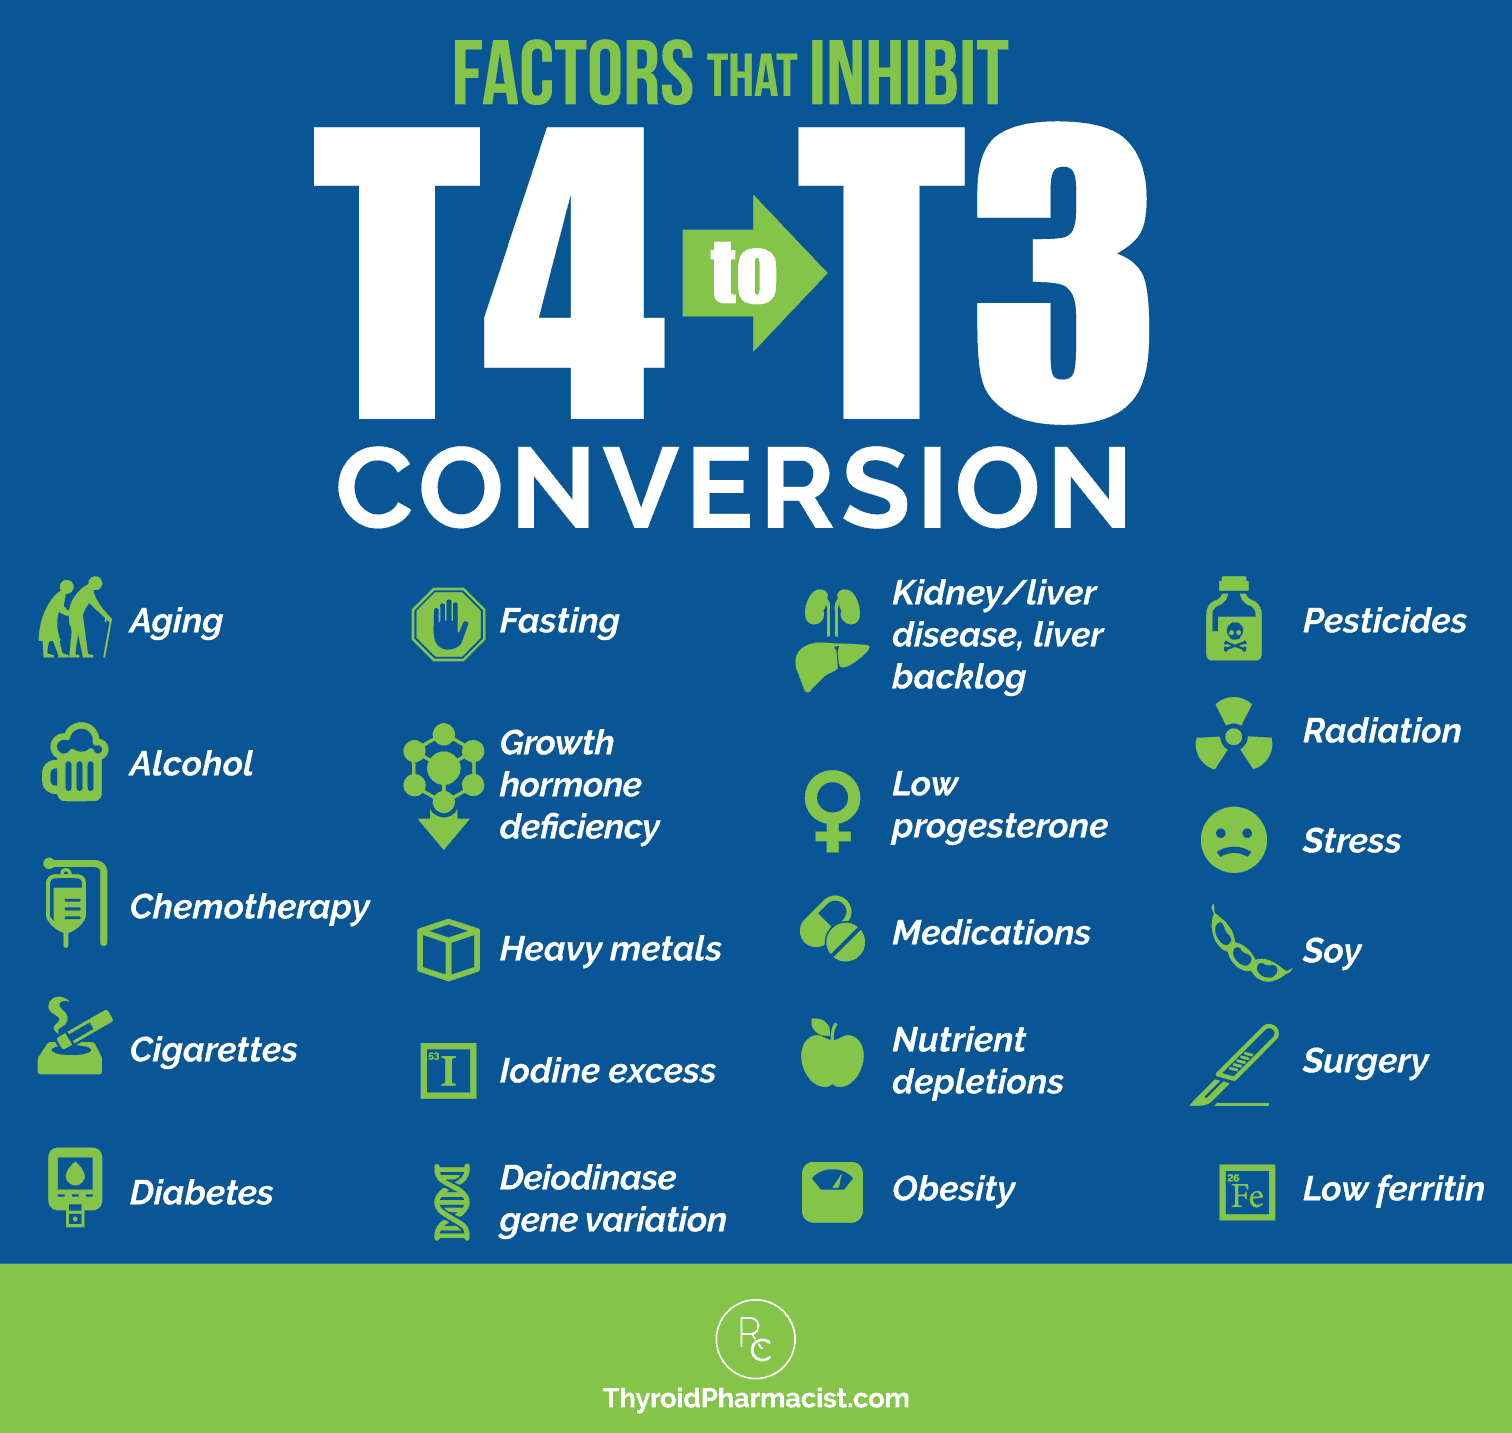 Factors That Inhibit T4 to T3 Conversion